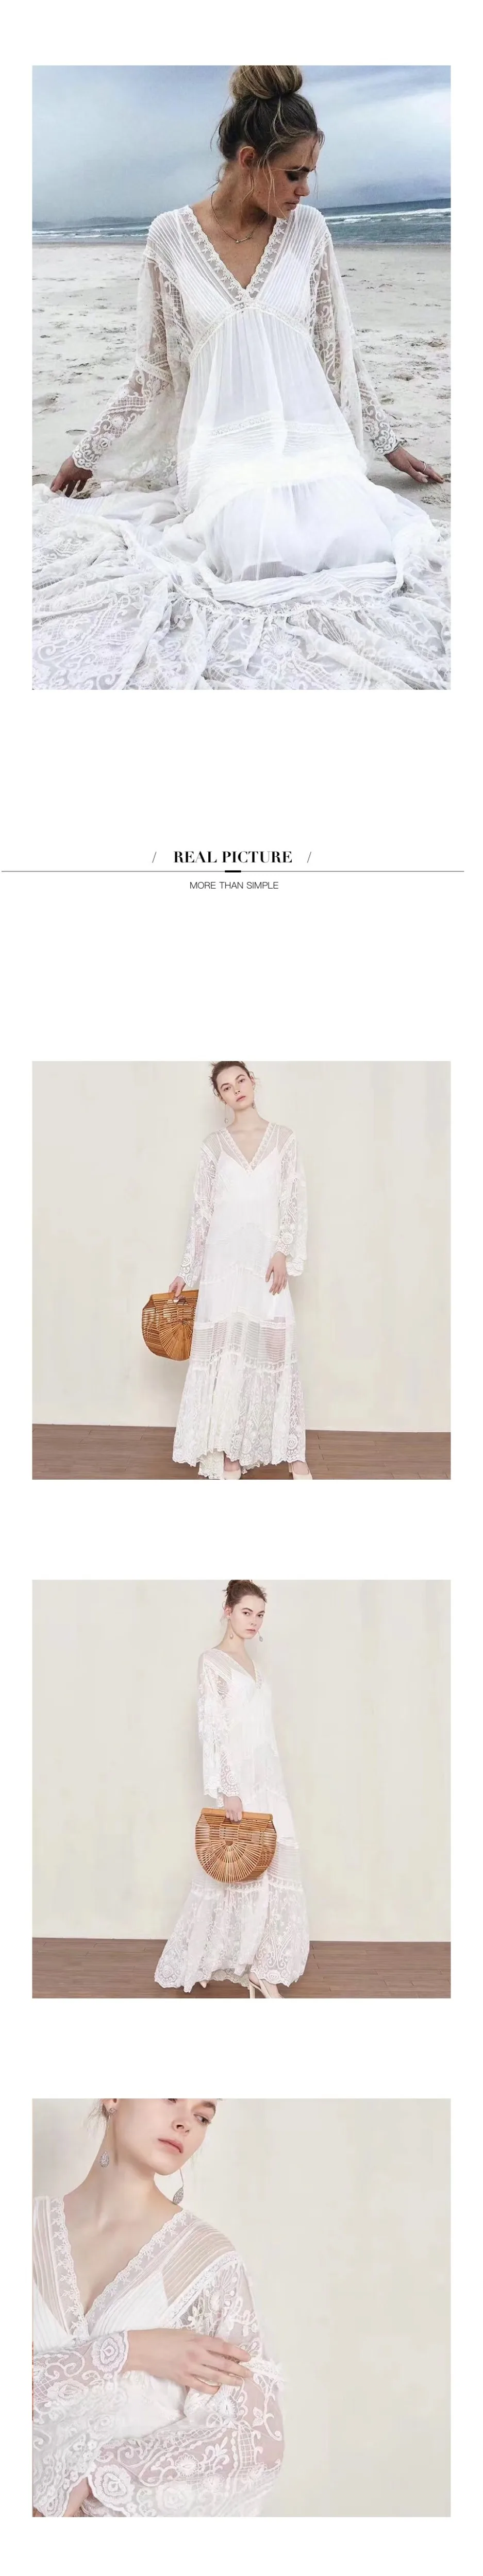 EXCOSMIC высокое качество лоскутное открытое Цветочная вышивка женское белое платье Высокая талия с расклешенными рукавами элегантное кружевное пляжное платье